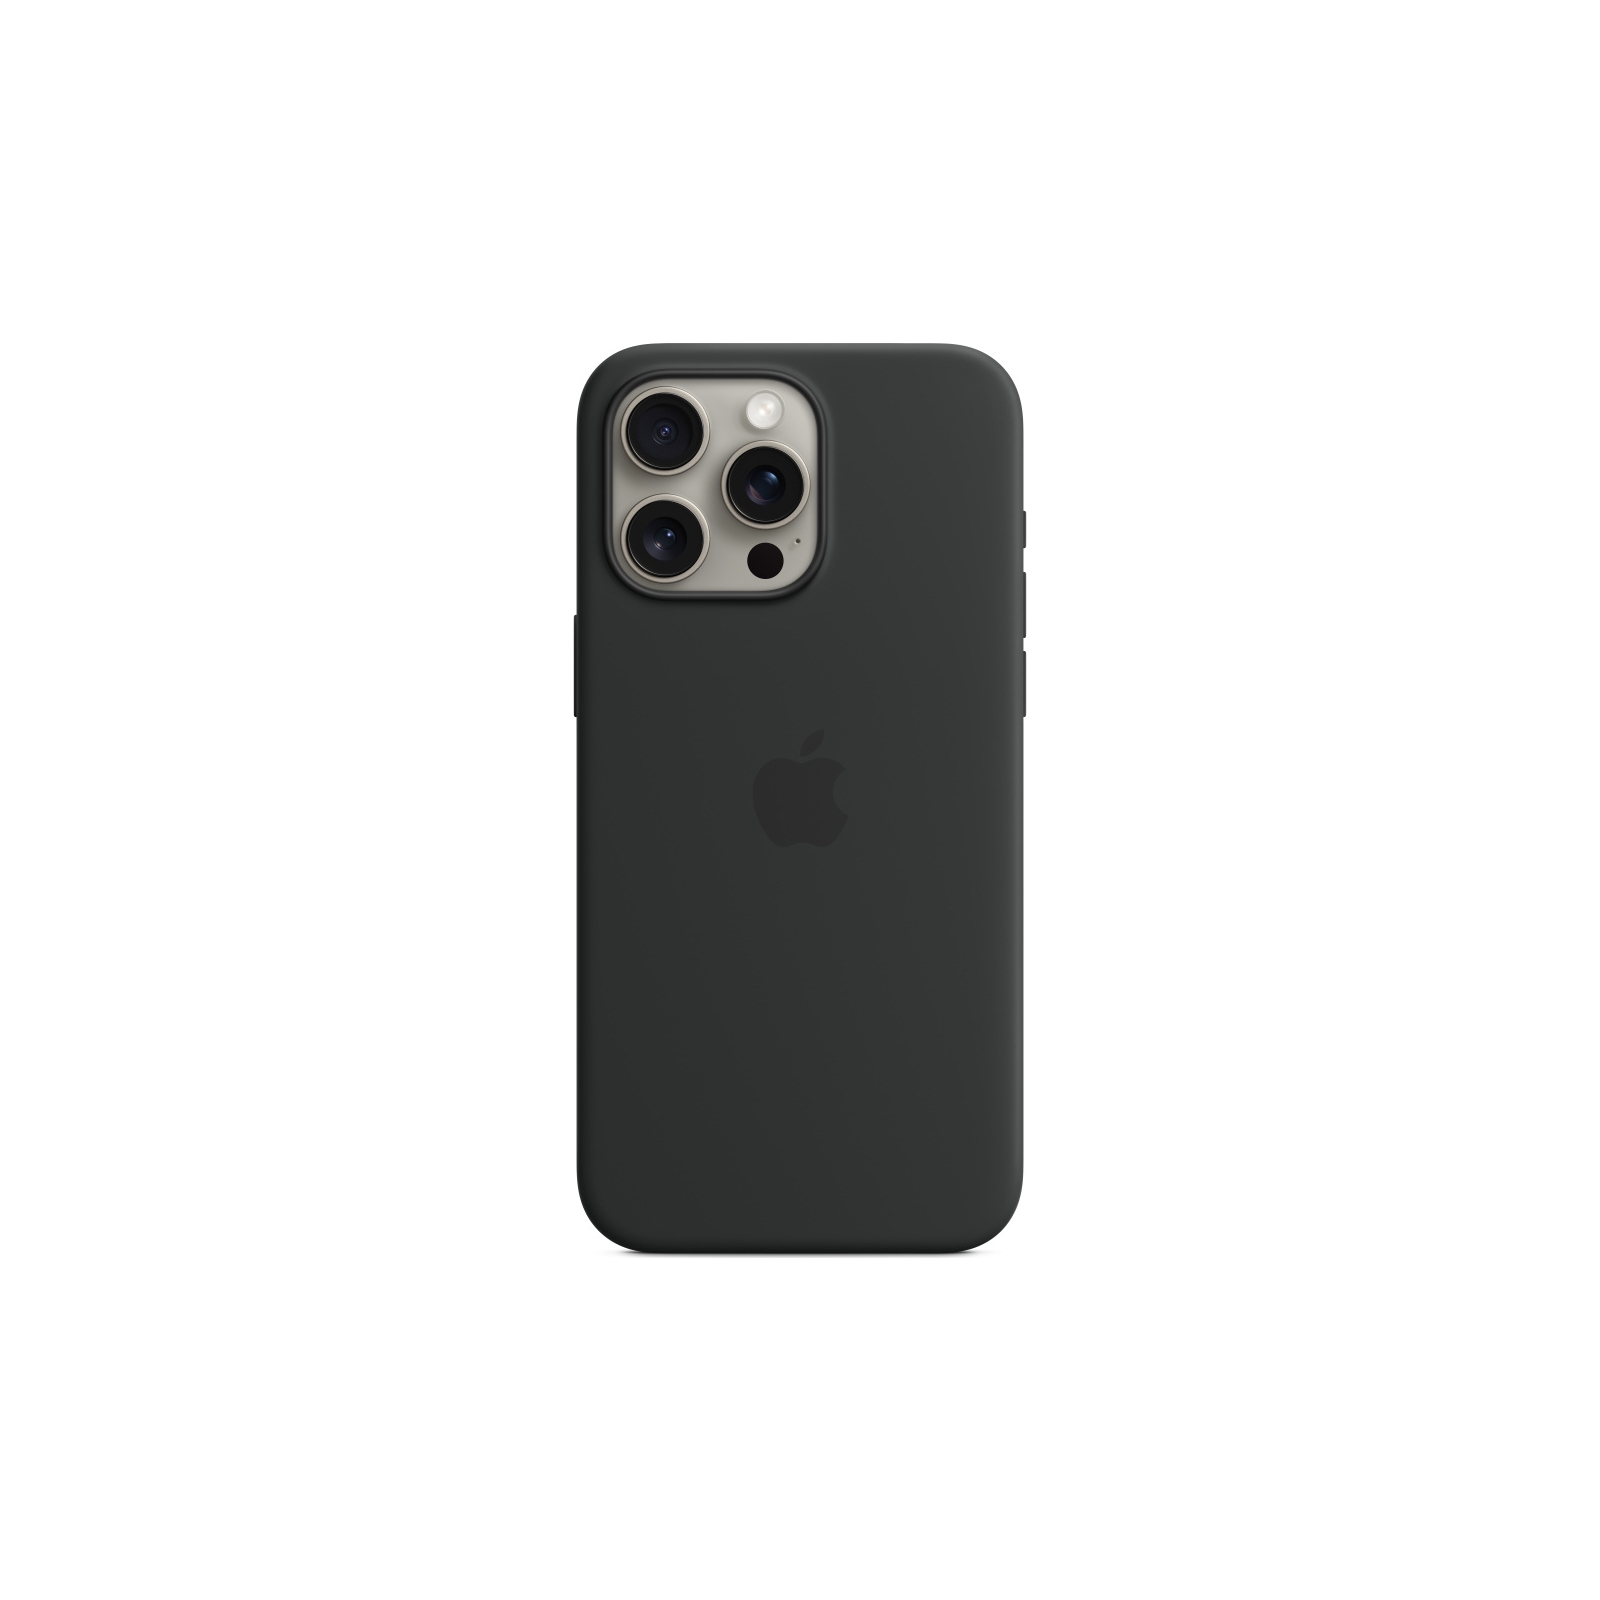 Чехол для мобильного телефона Apple iPhone 15 Pro Max Silicone Case with MagSafe Light Pink (MT1U3ZM/A)